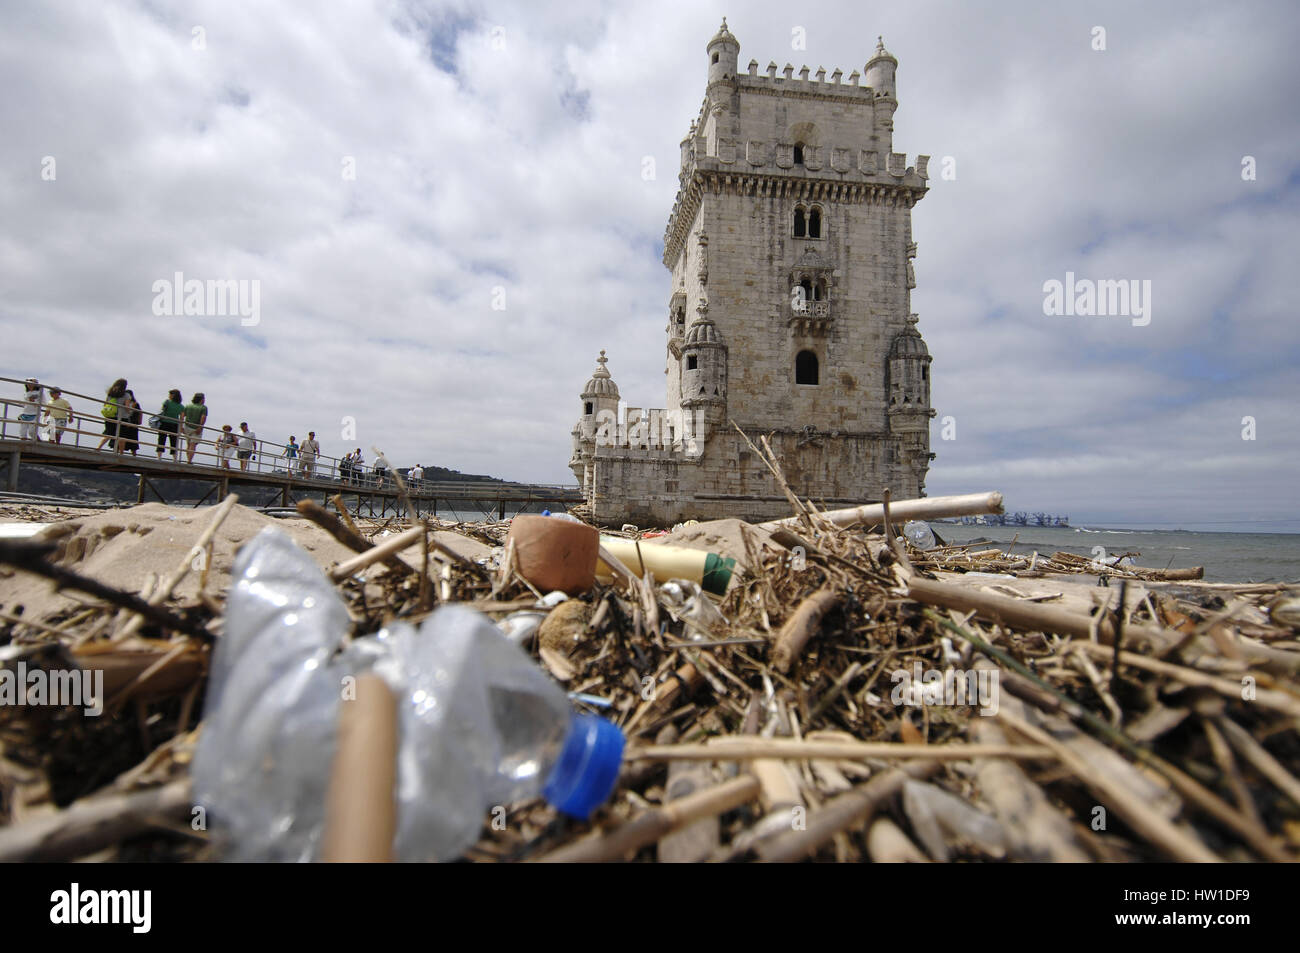 Lissabon, Belem - Verschmutzung, Lissabon, Belem - Verschmutzung Stockfoto